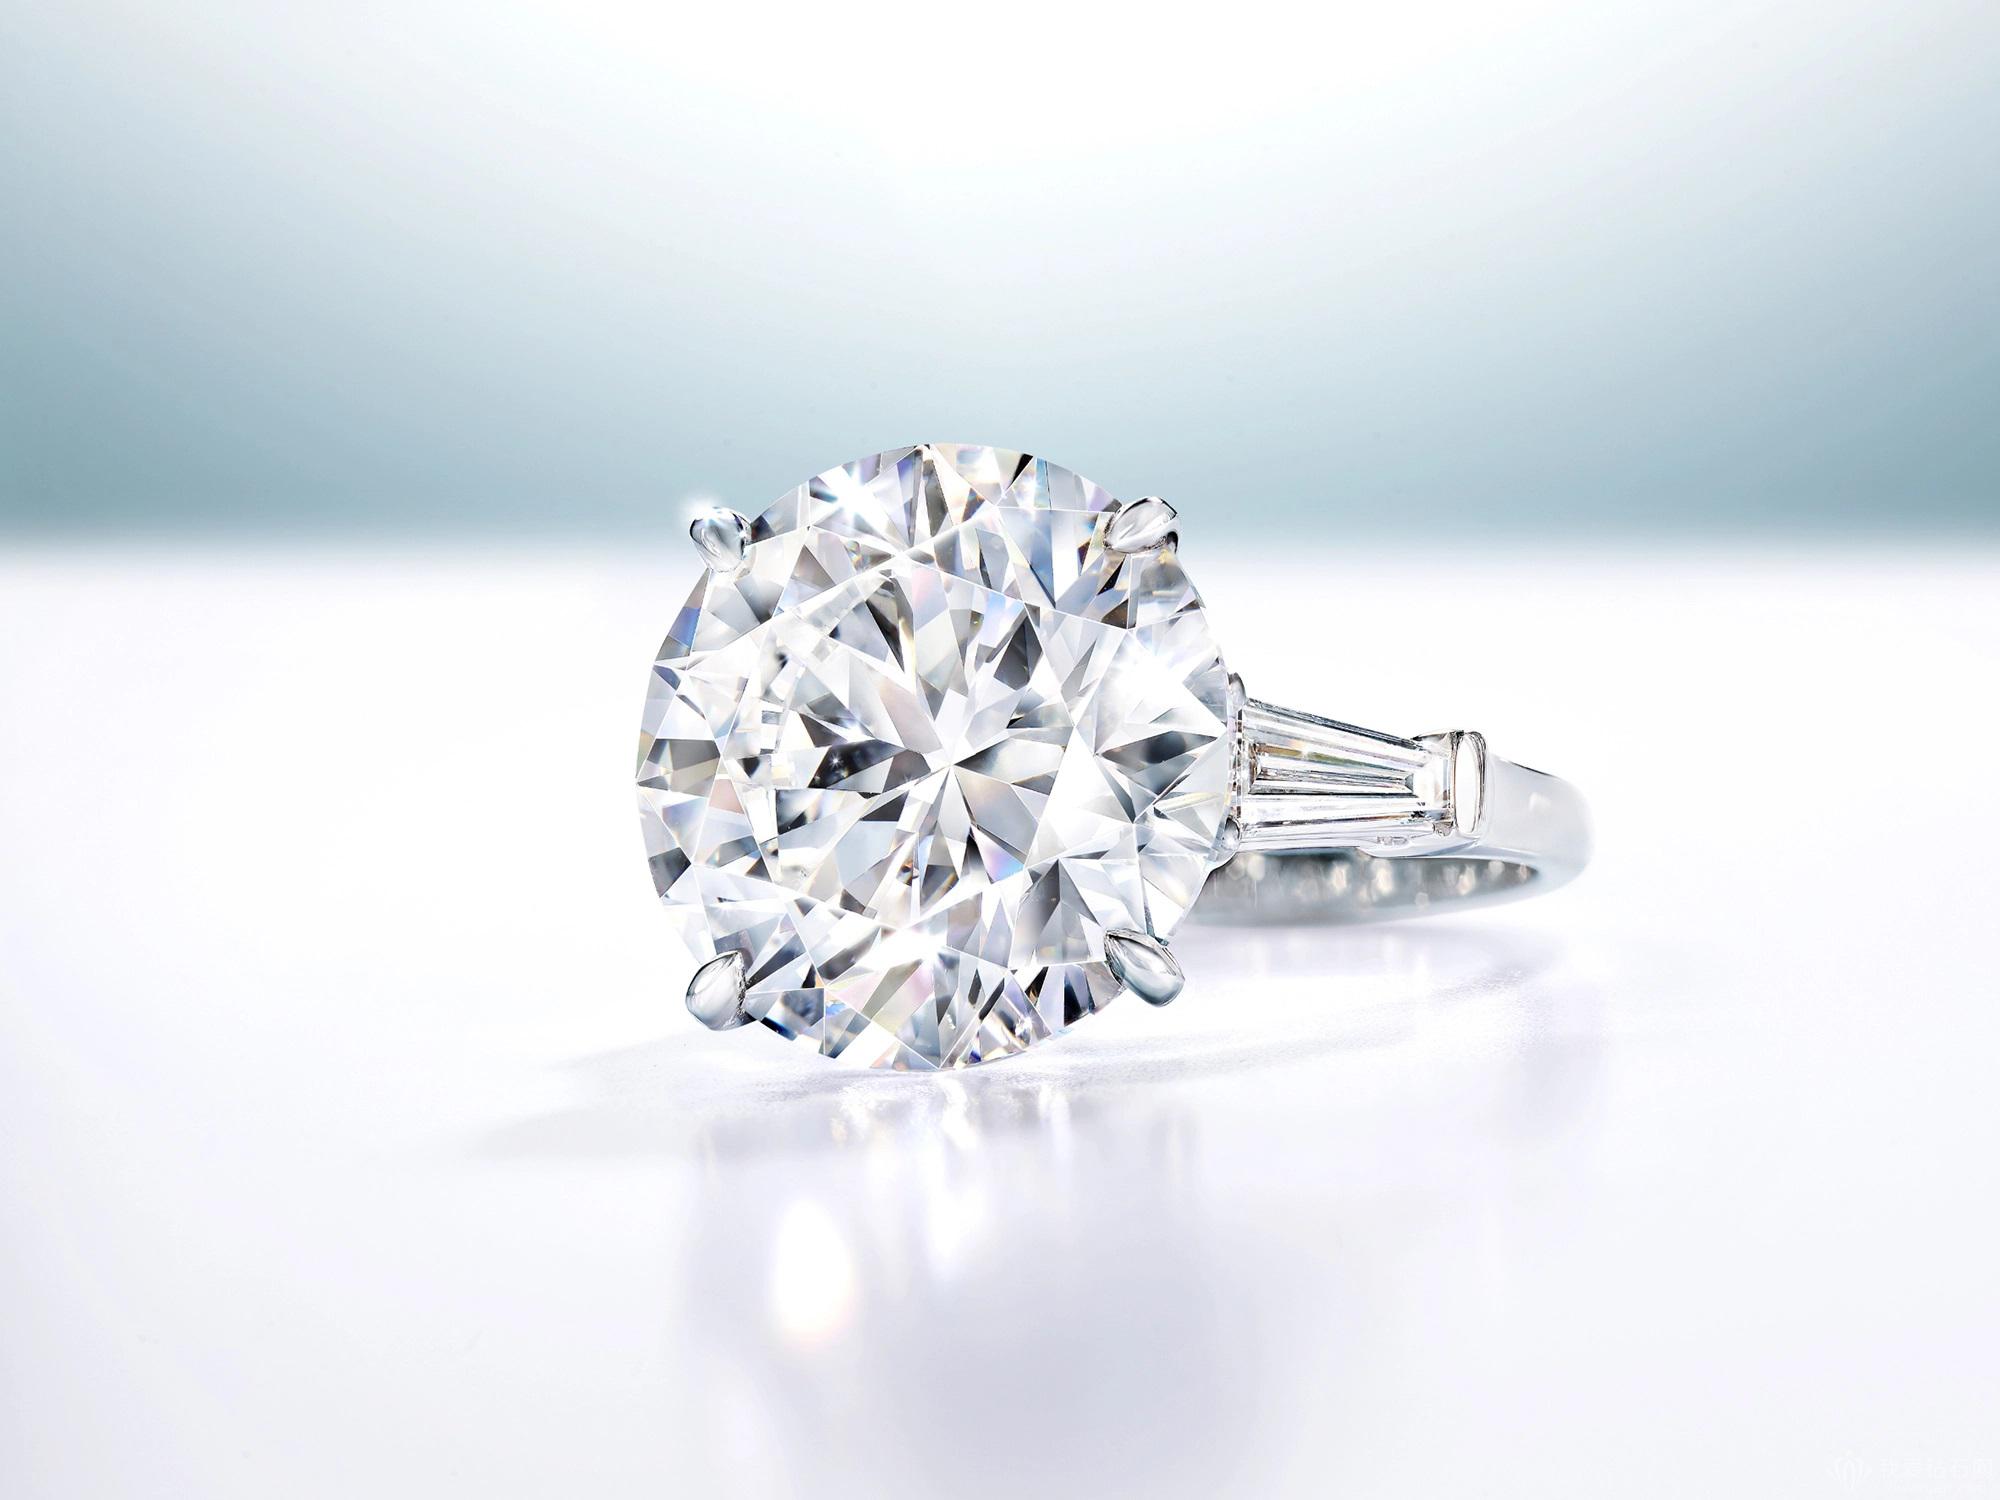 行业重磅消息—豫园珠宝正式进军培育钻石市场，推出首个培育钻石品牌